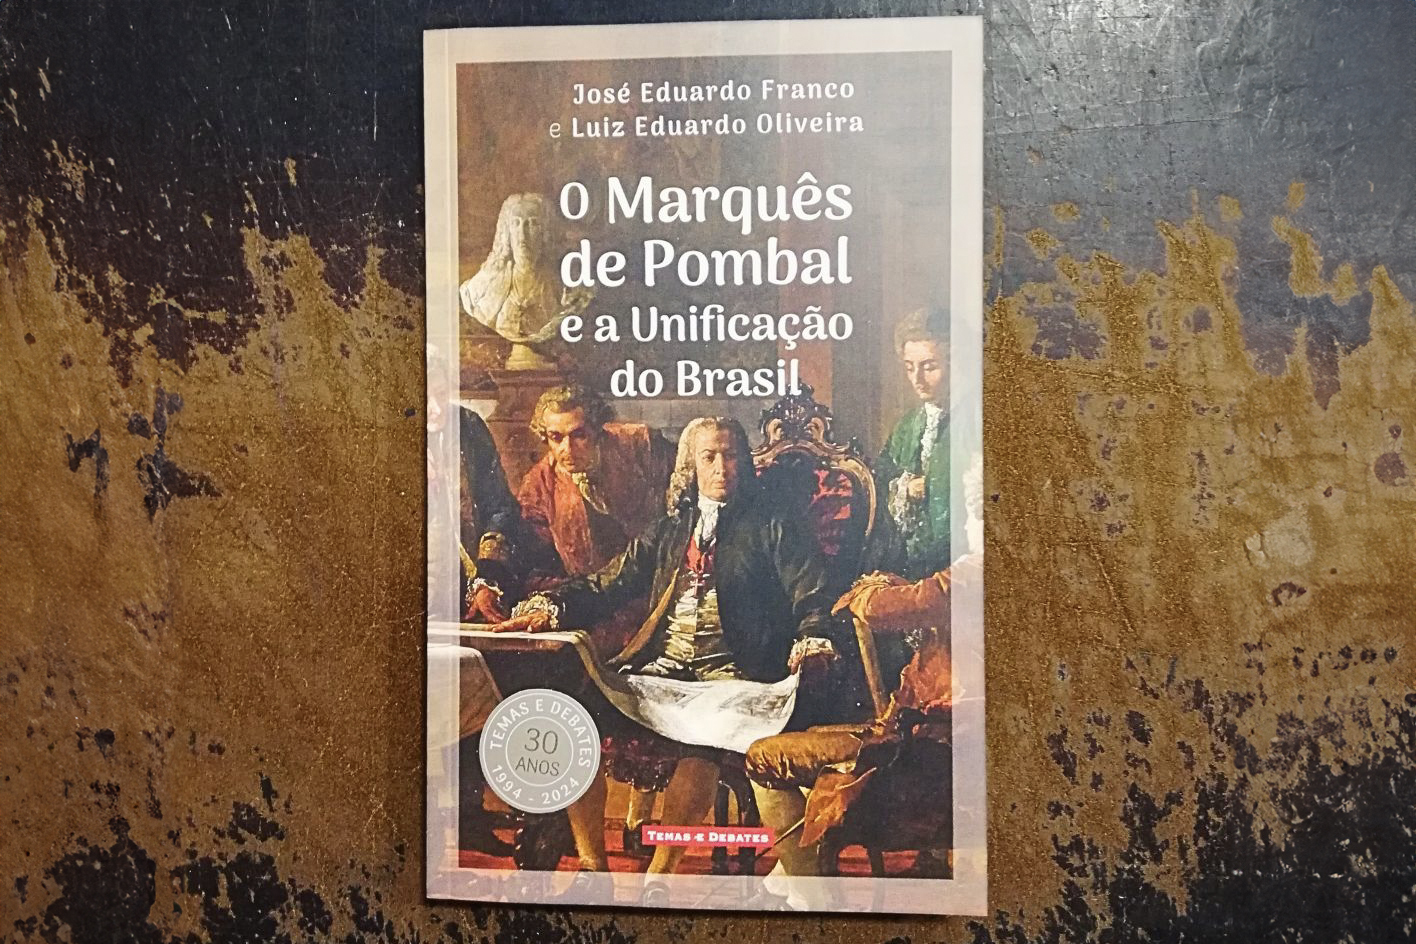 Obra foi lançada pelo selo português Temas & Debates